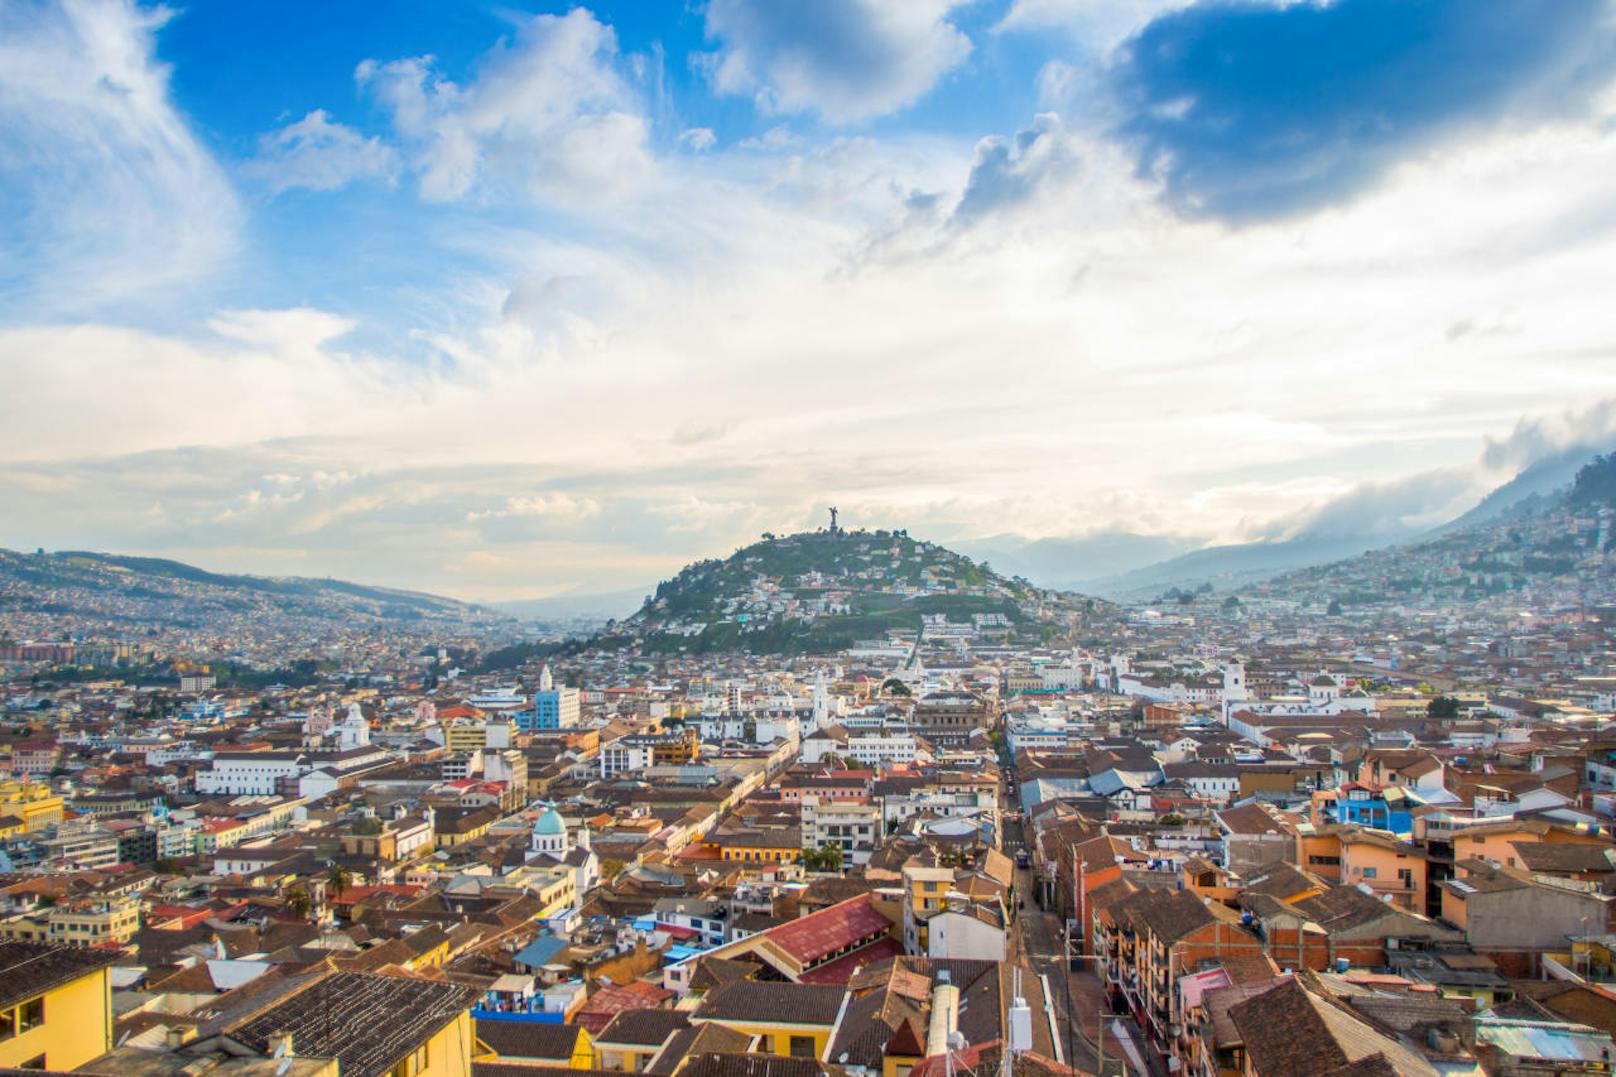 Panorama-Blick auf die zwei Hemisphären in Quito, Ecuador.